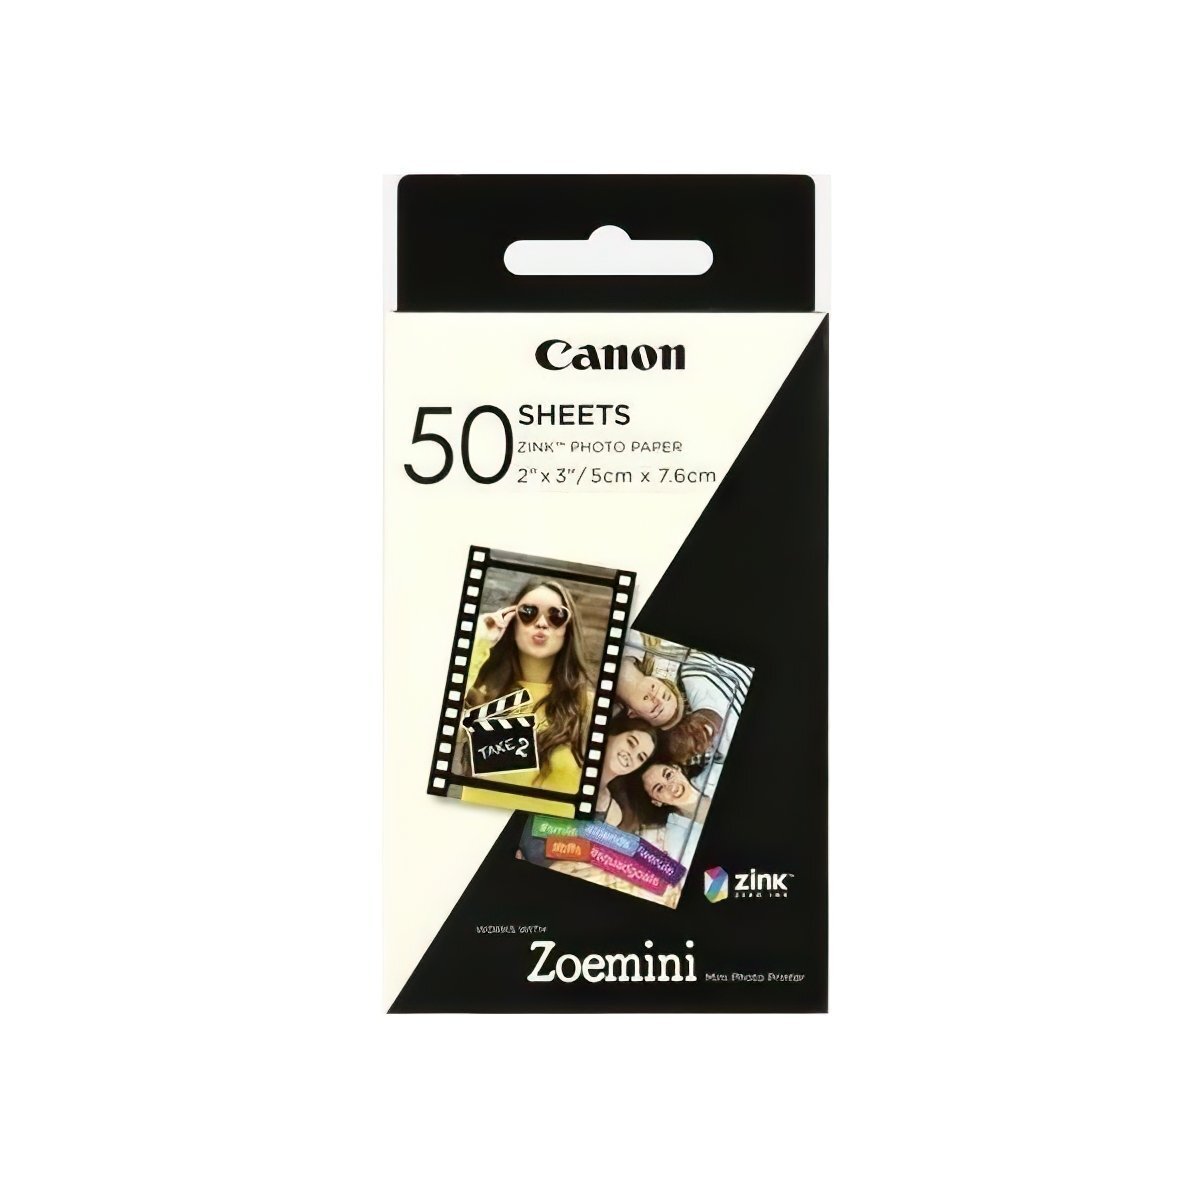 Фотобумага Canon ZINK Paper ZP-2030 50 SHEETS (3215C002) фото 1